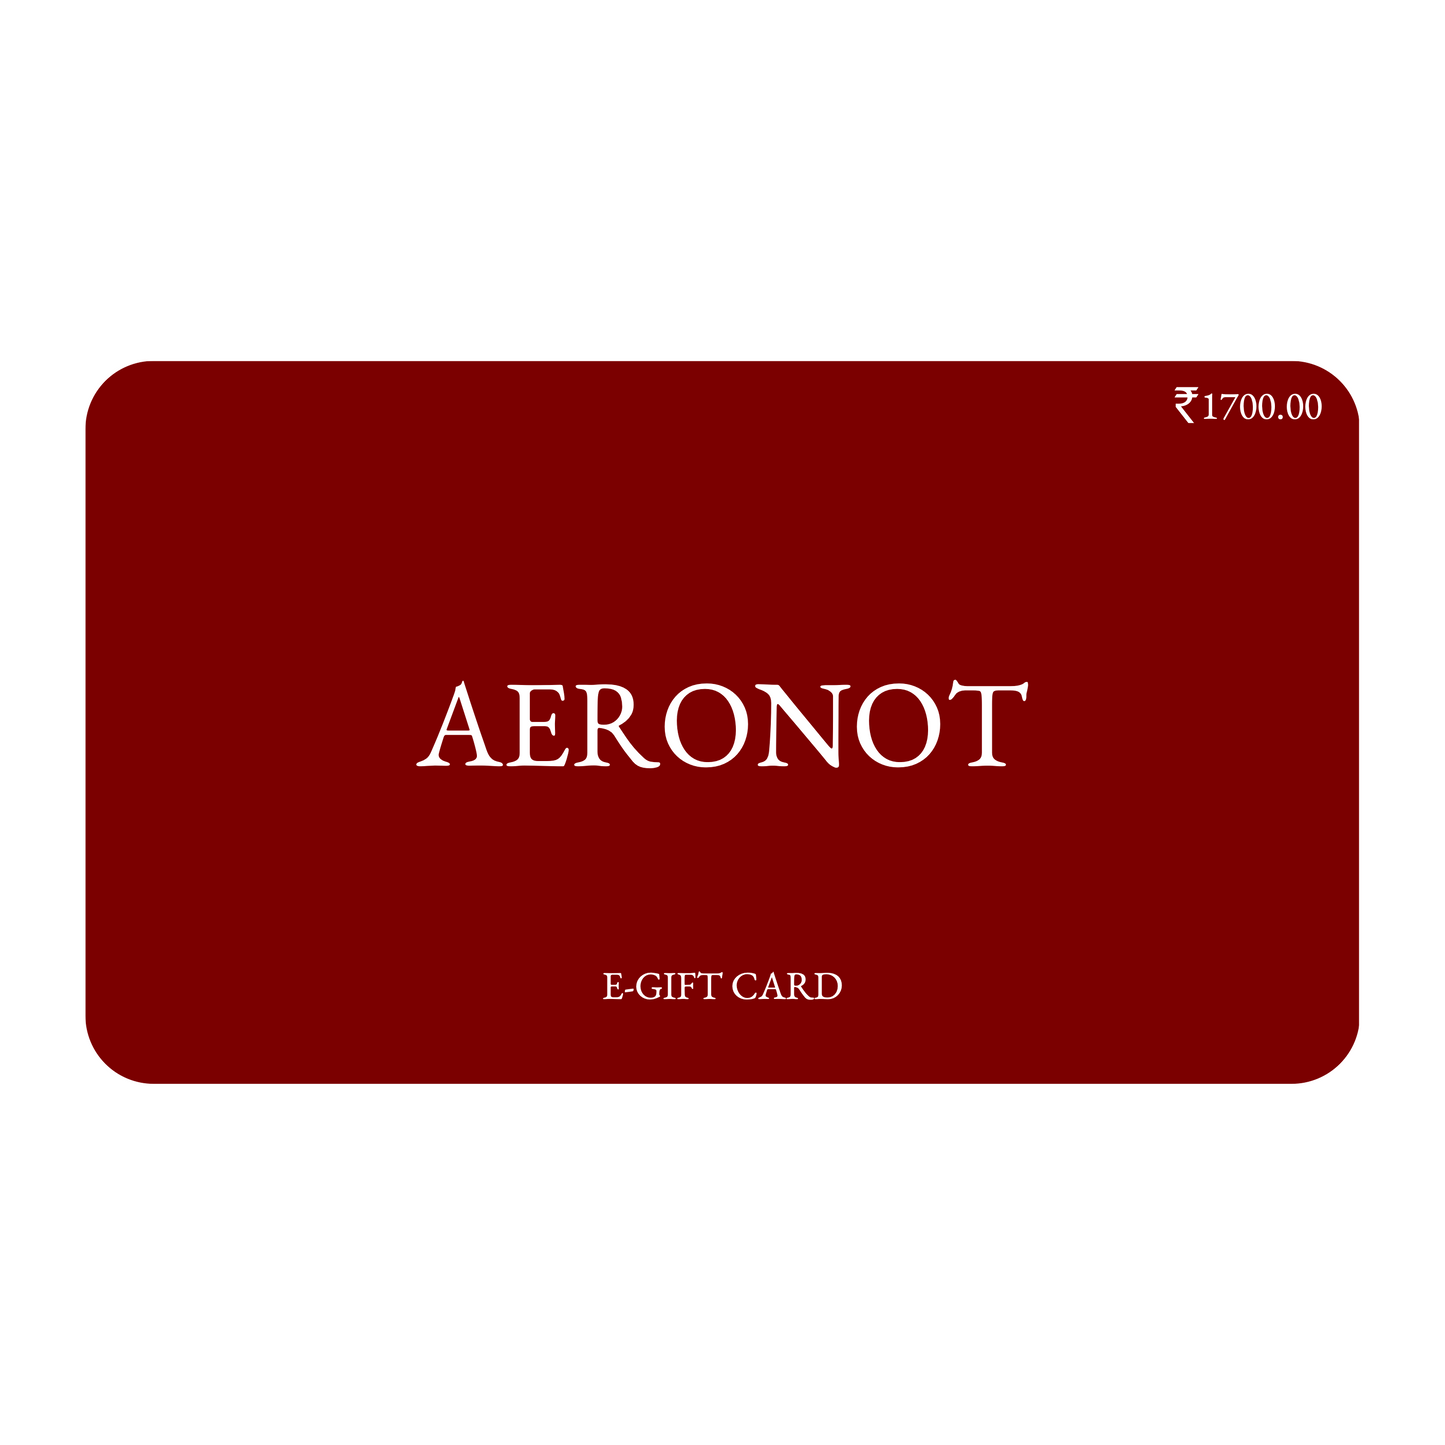 AERONOT Gift Card